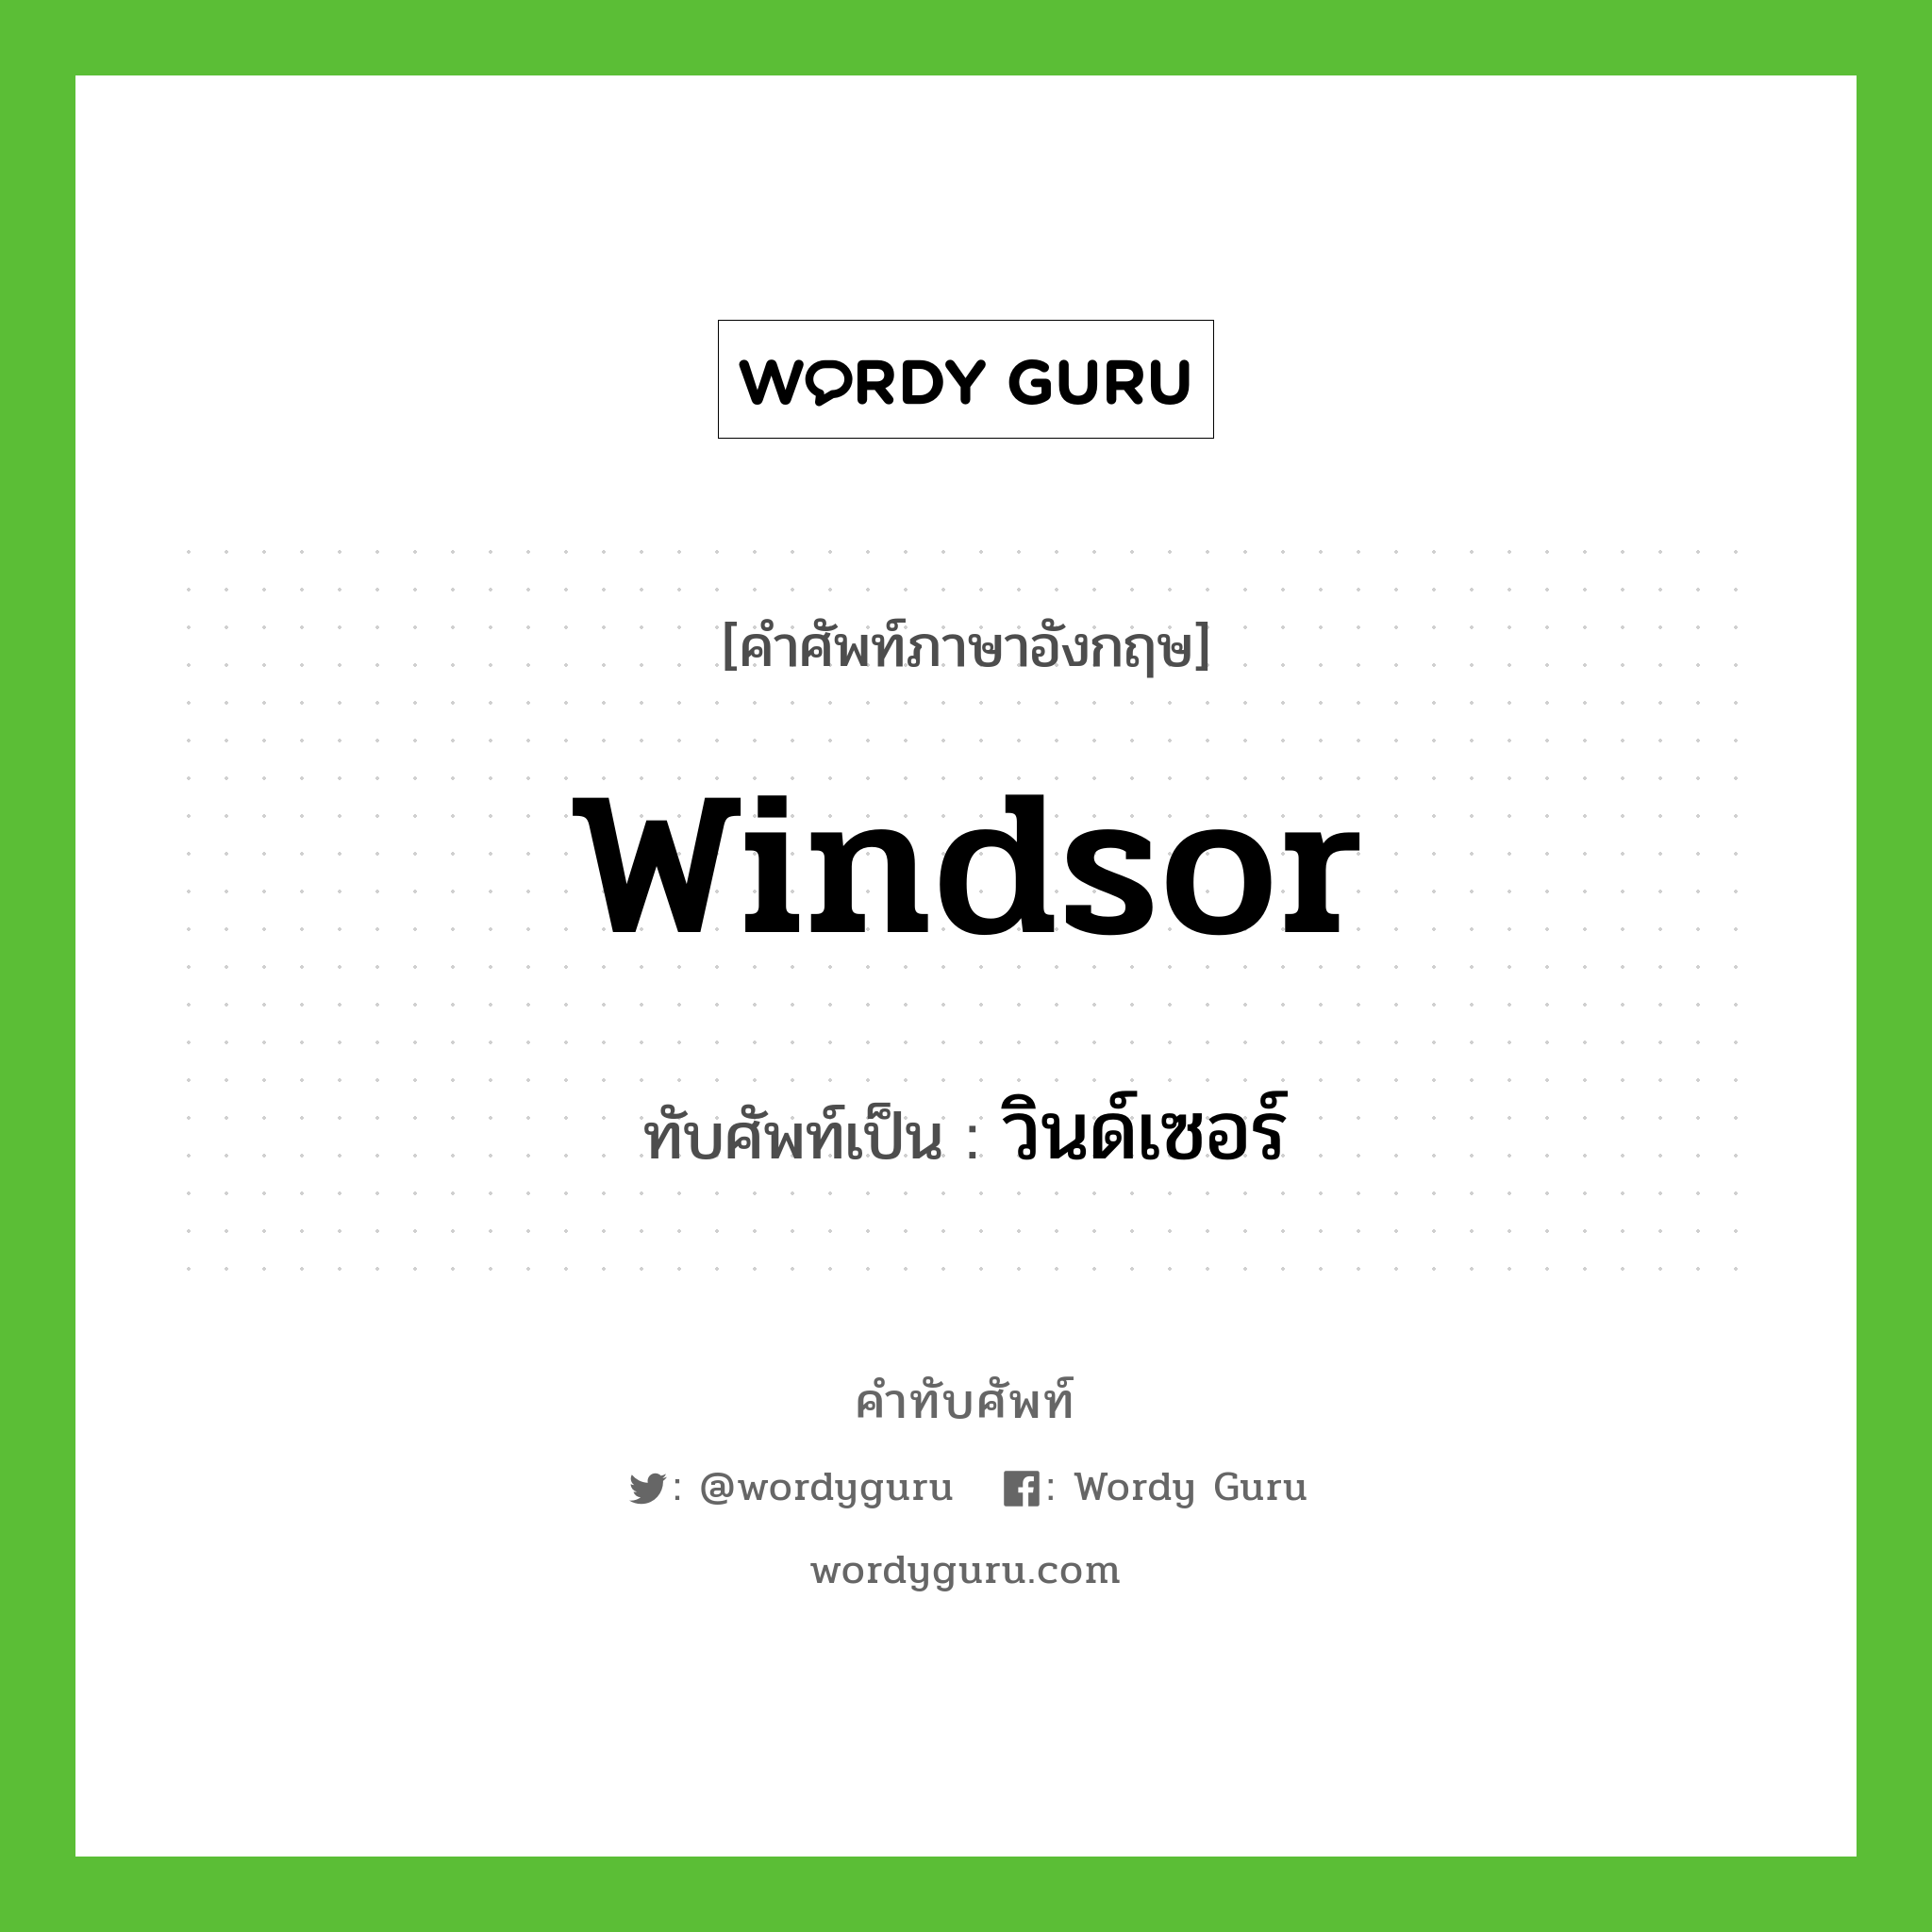 วินด์เซอร์ เขียนอย่างไร?, คำศัพท์ภาษาอังกฤษ วินด์เซอร์ ทับศัพท์เป็น Windsor